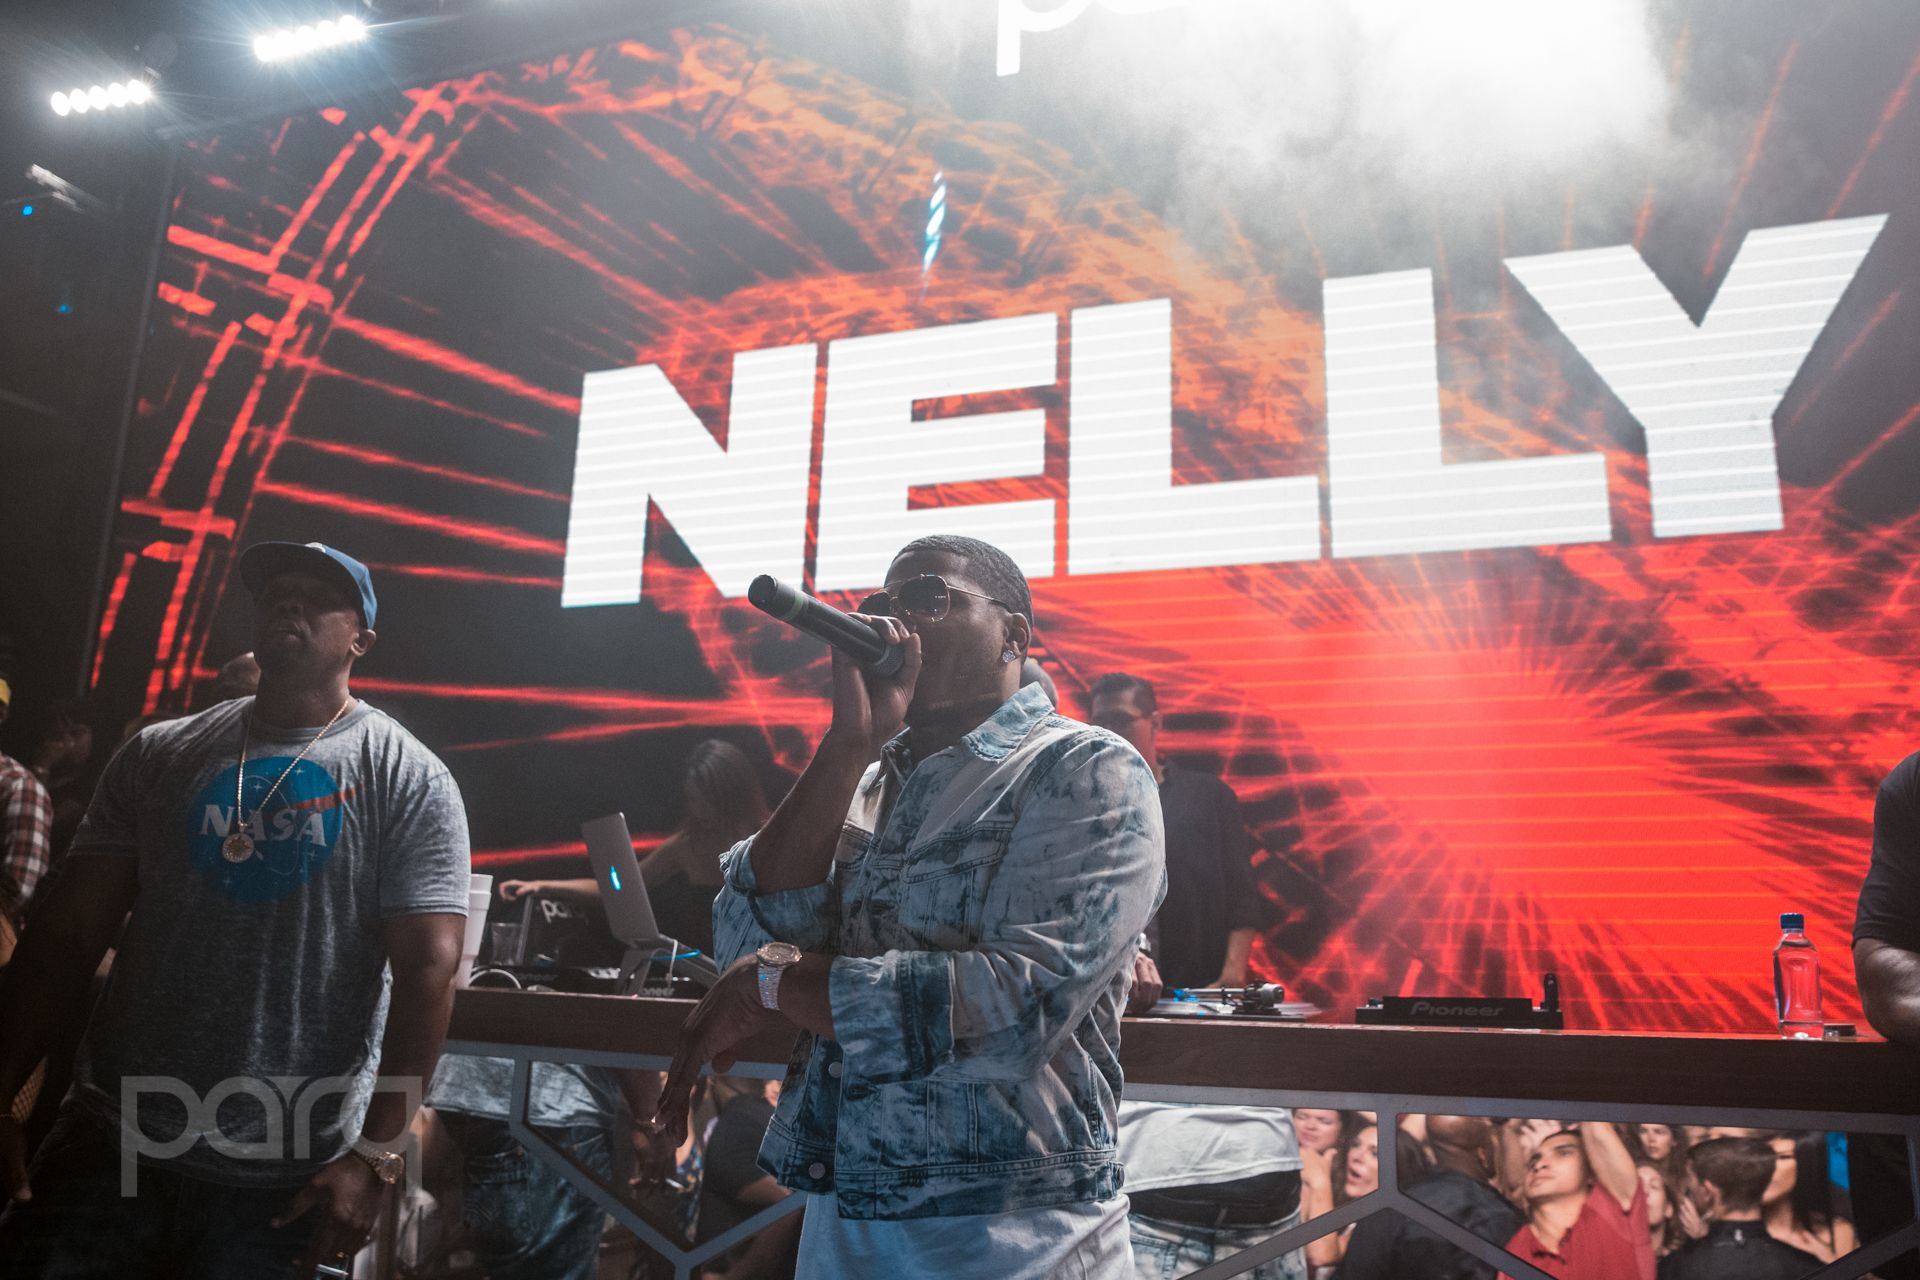 09.09.17 Parq - Nelly-41.jpg